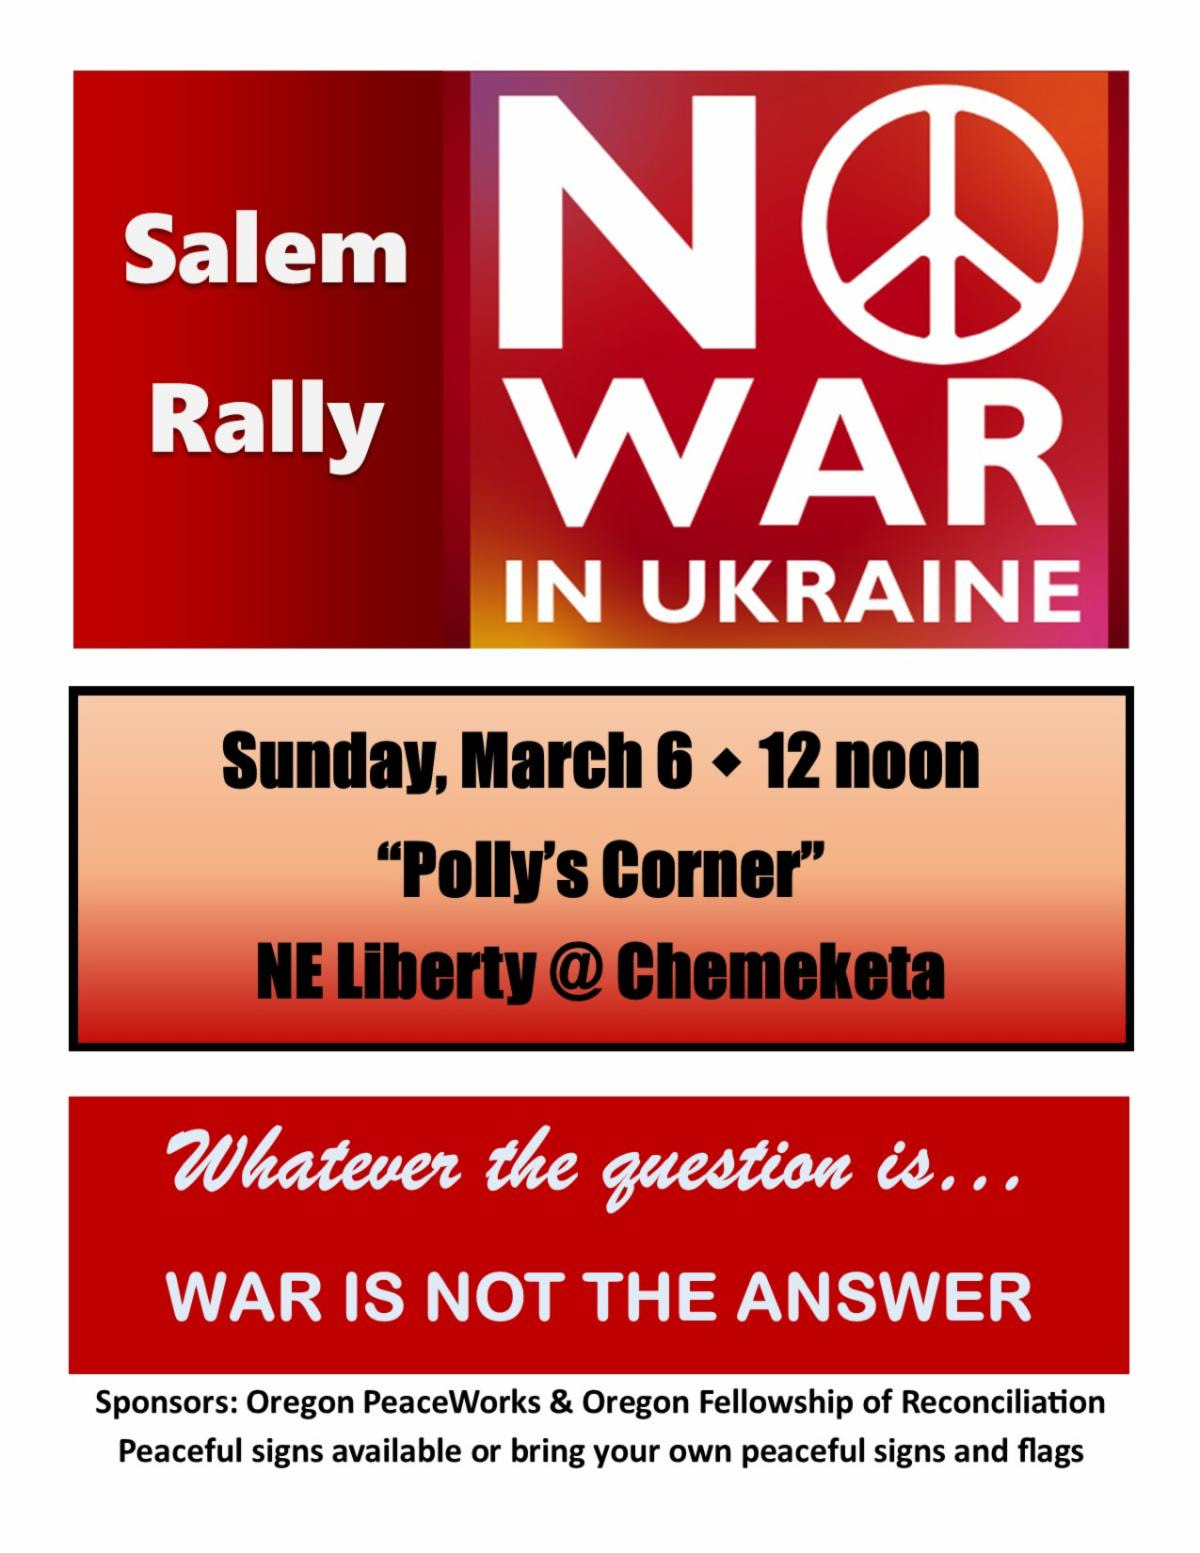 Графика митинга в Салеме "Нет войне в Украине". Каким бы ни был вопрос... Война - это не ответ